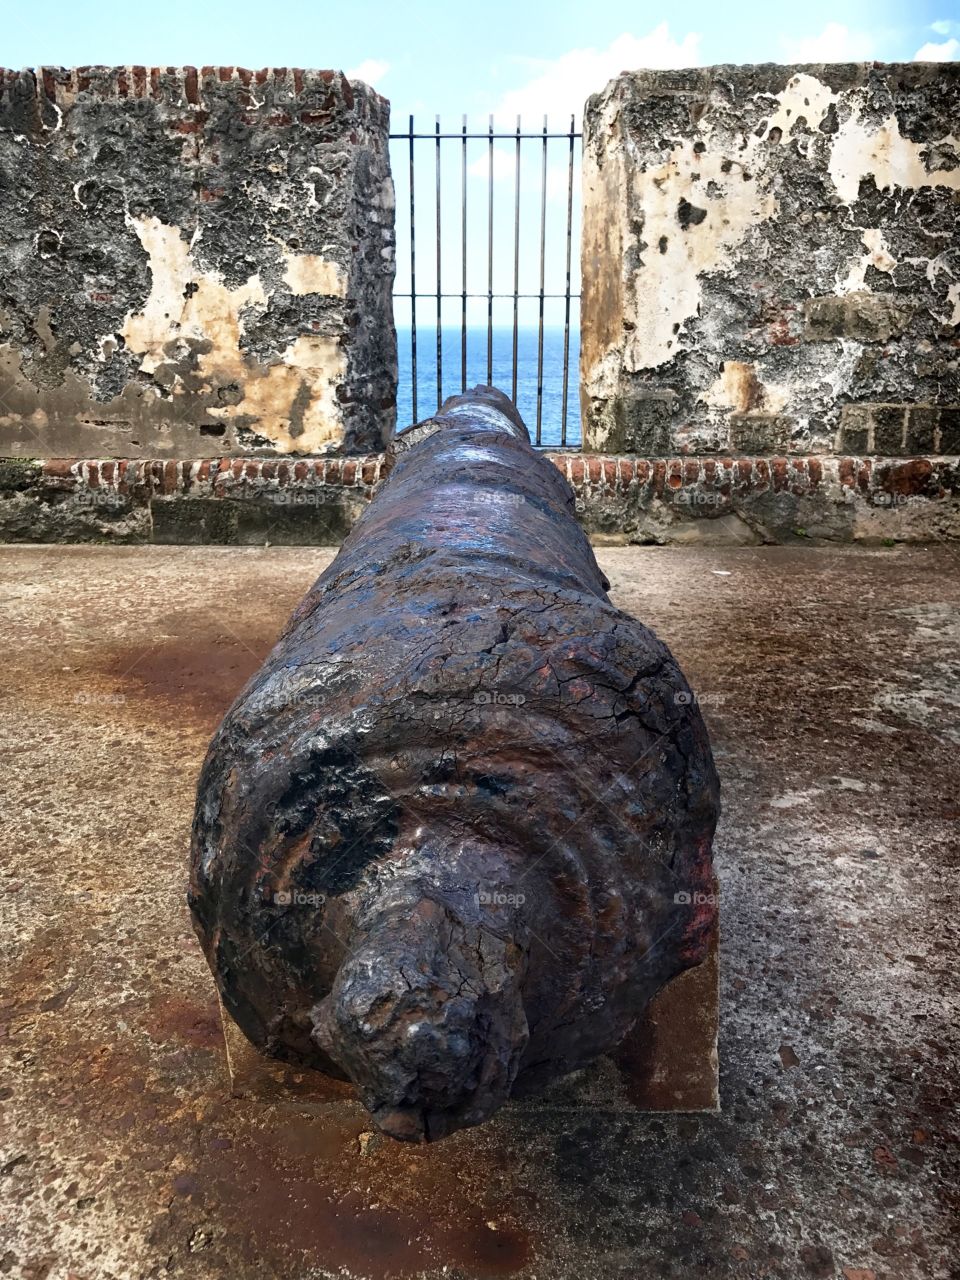 The 16th-century Castillo San Felipe del Morro in Puerto Rico.